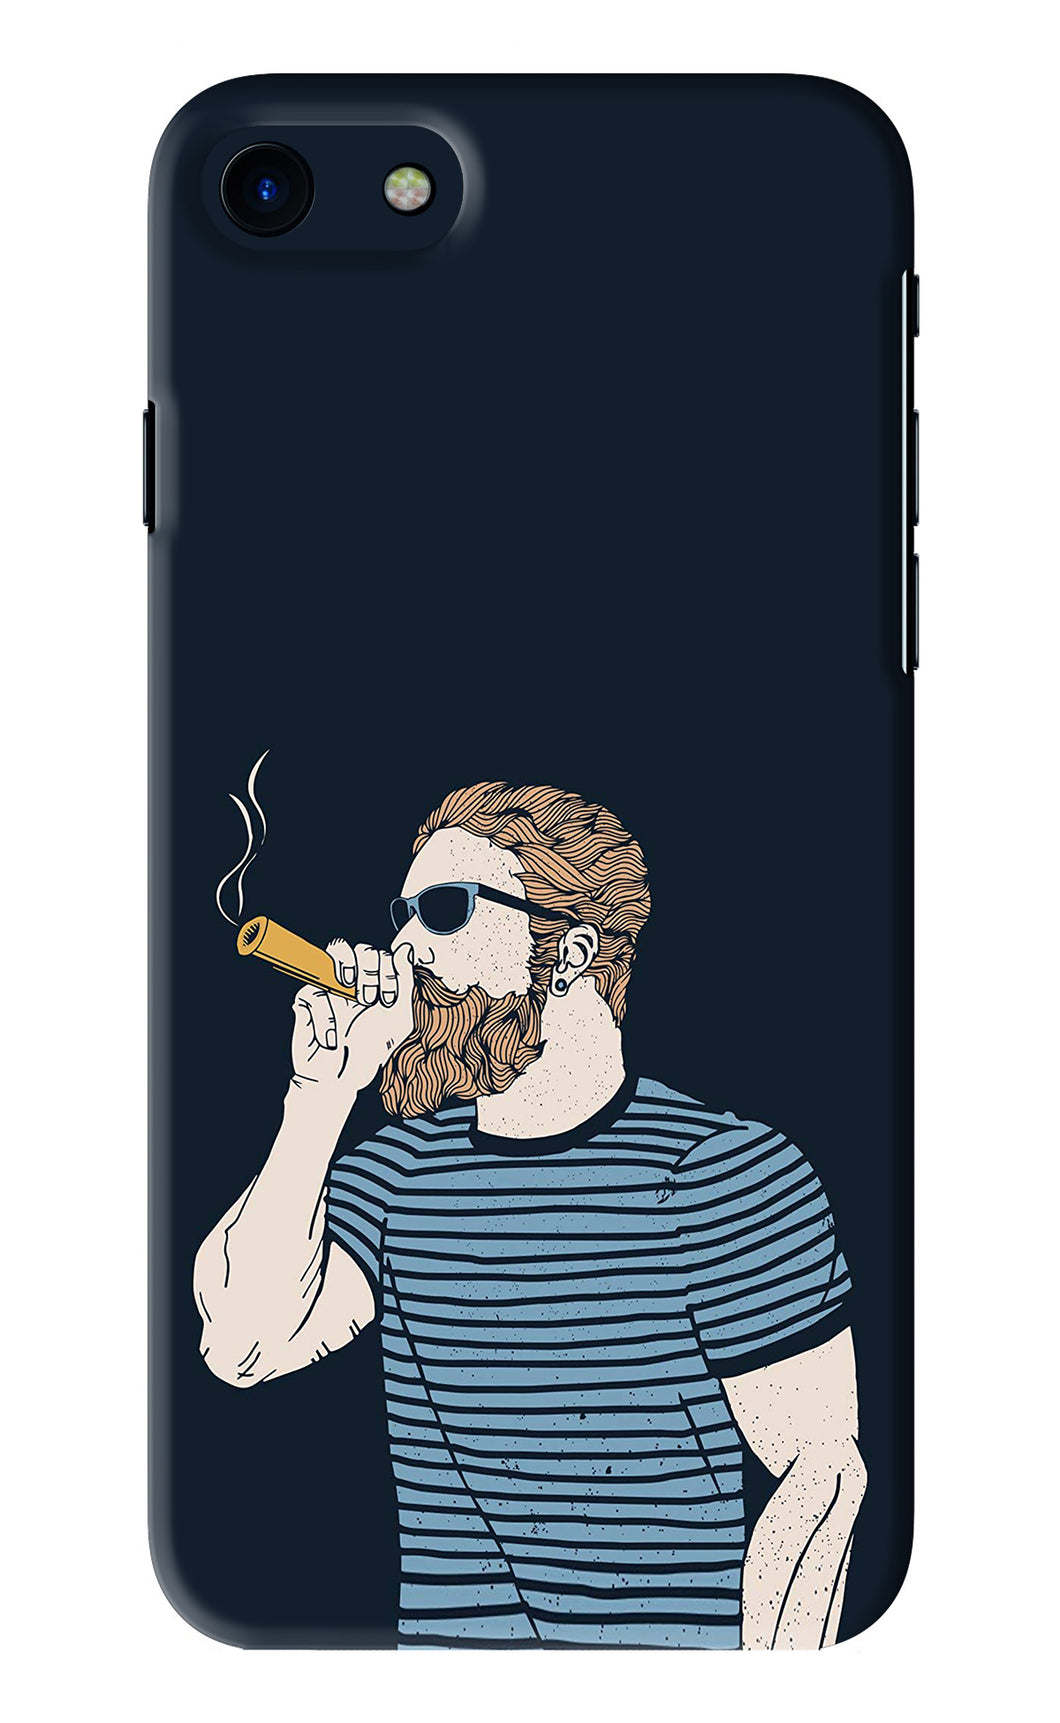 Smoking iPhone SE 2020 Back Skin Wrap